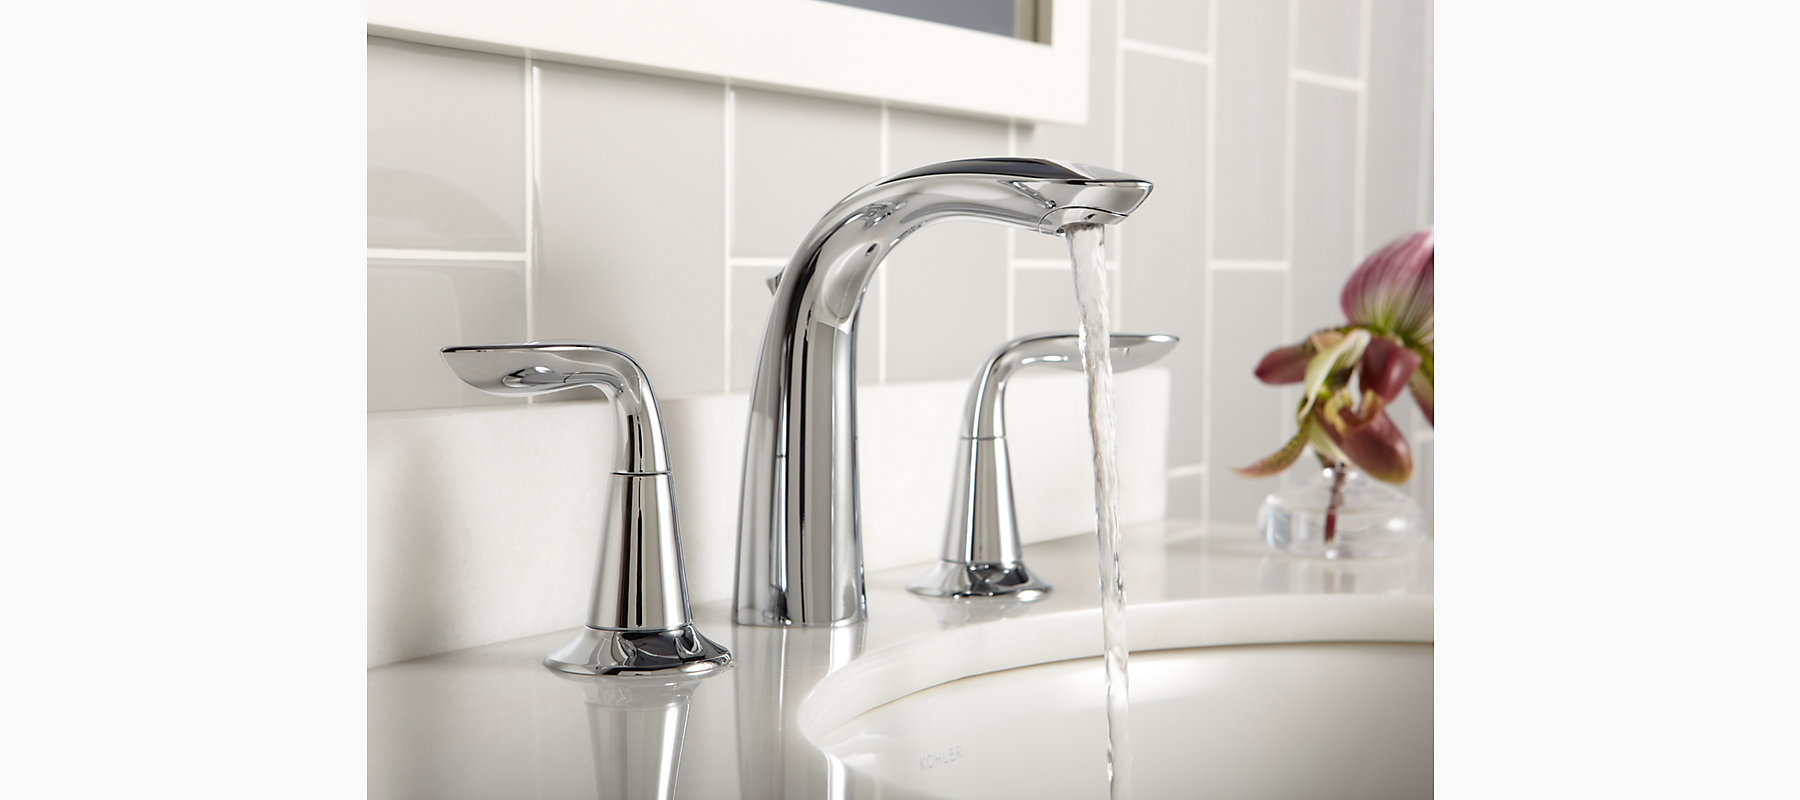 K-5317-4 | Refinia widespread bathroom sink faucet | KOHLER